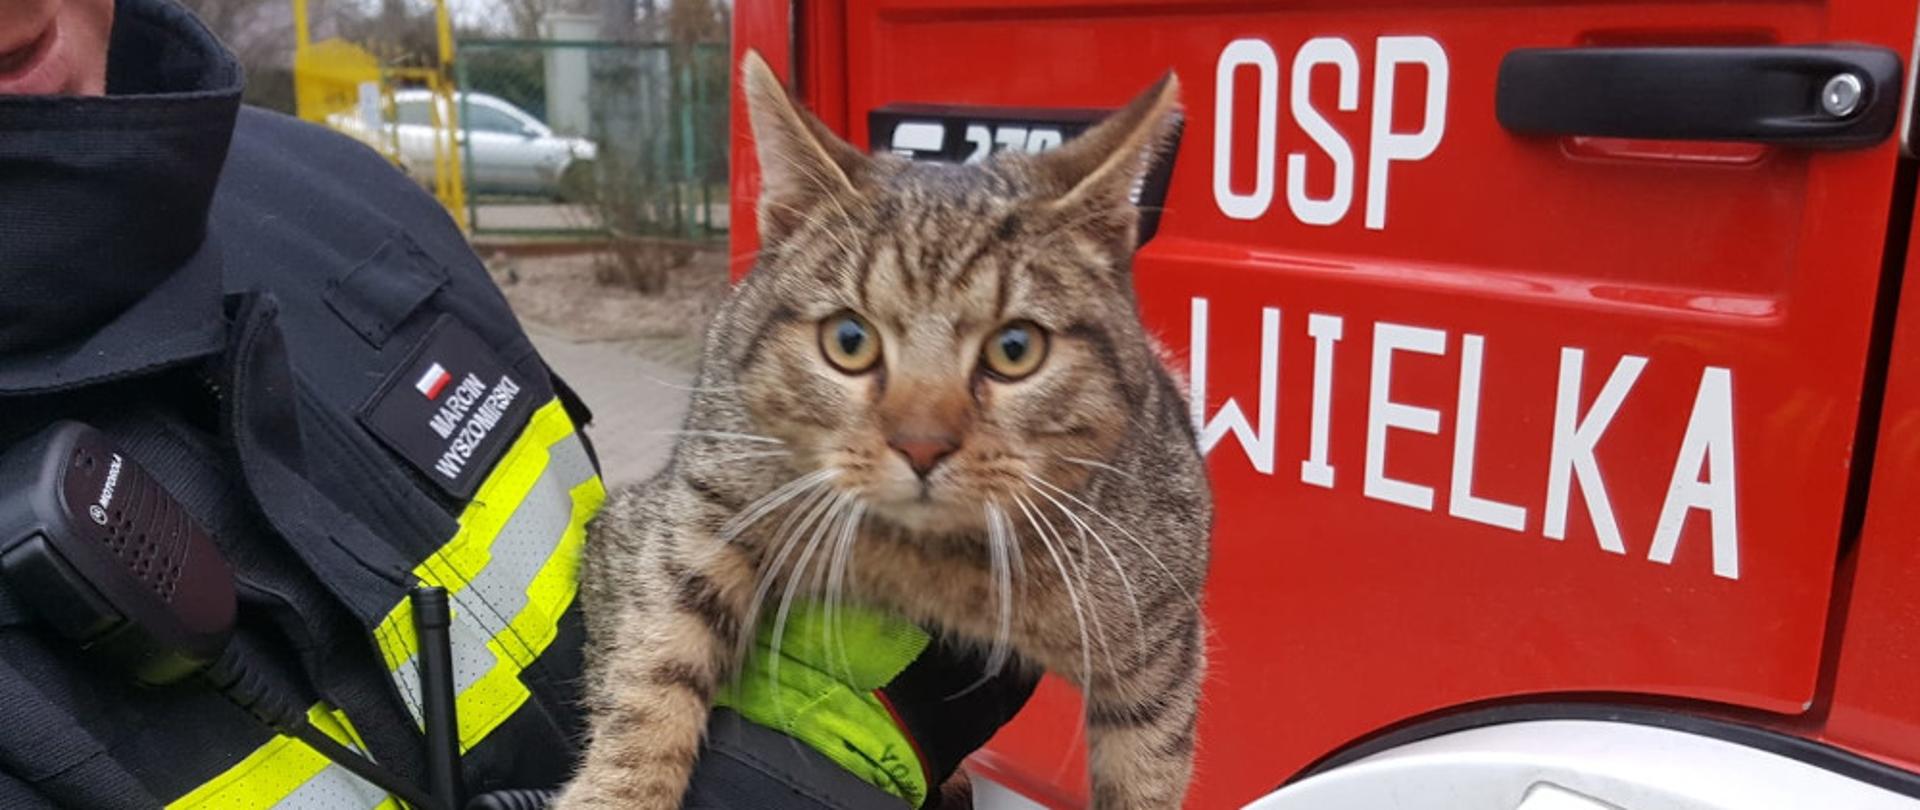 Kot zdjęty z drzewa w miejscowości Gwda Mała - strażak ubrany w ubranie specjalne koloru granatowego trzyma uratowanego kota.